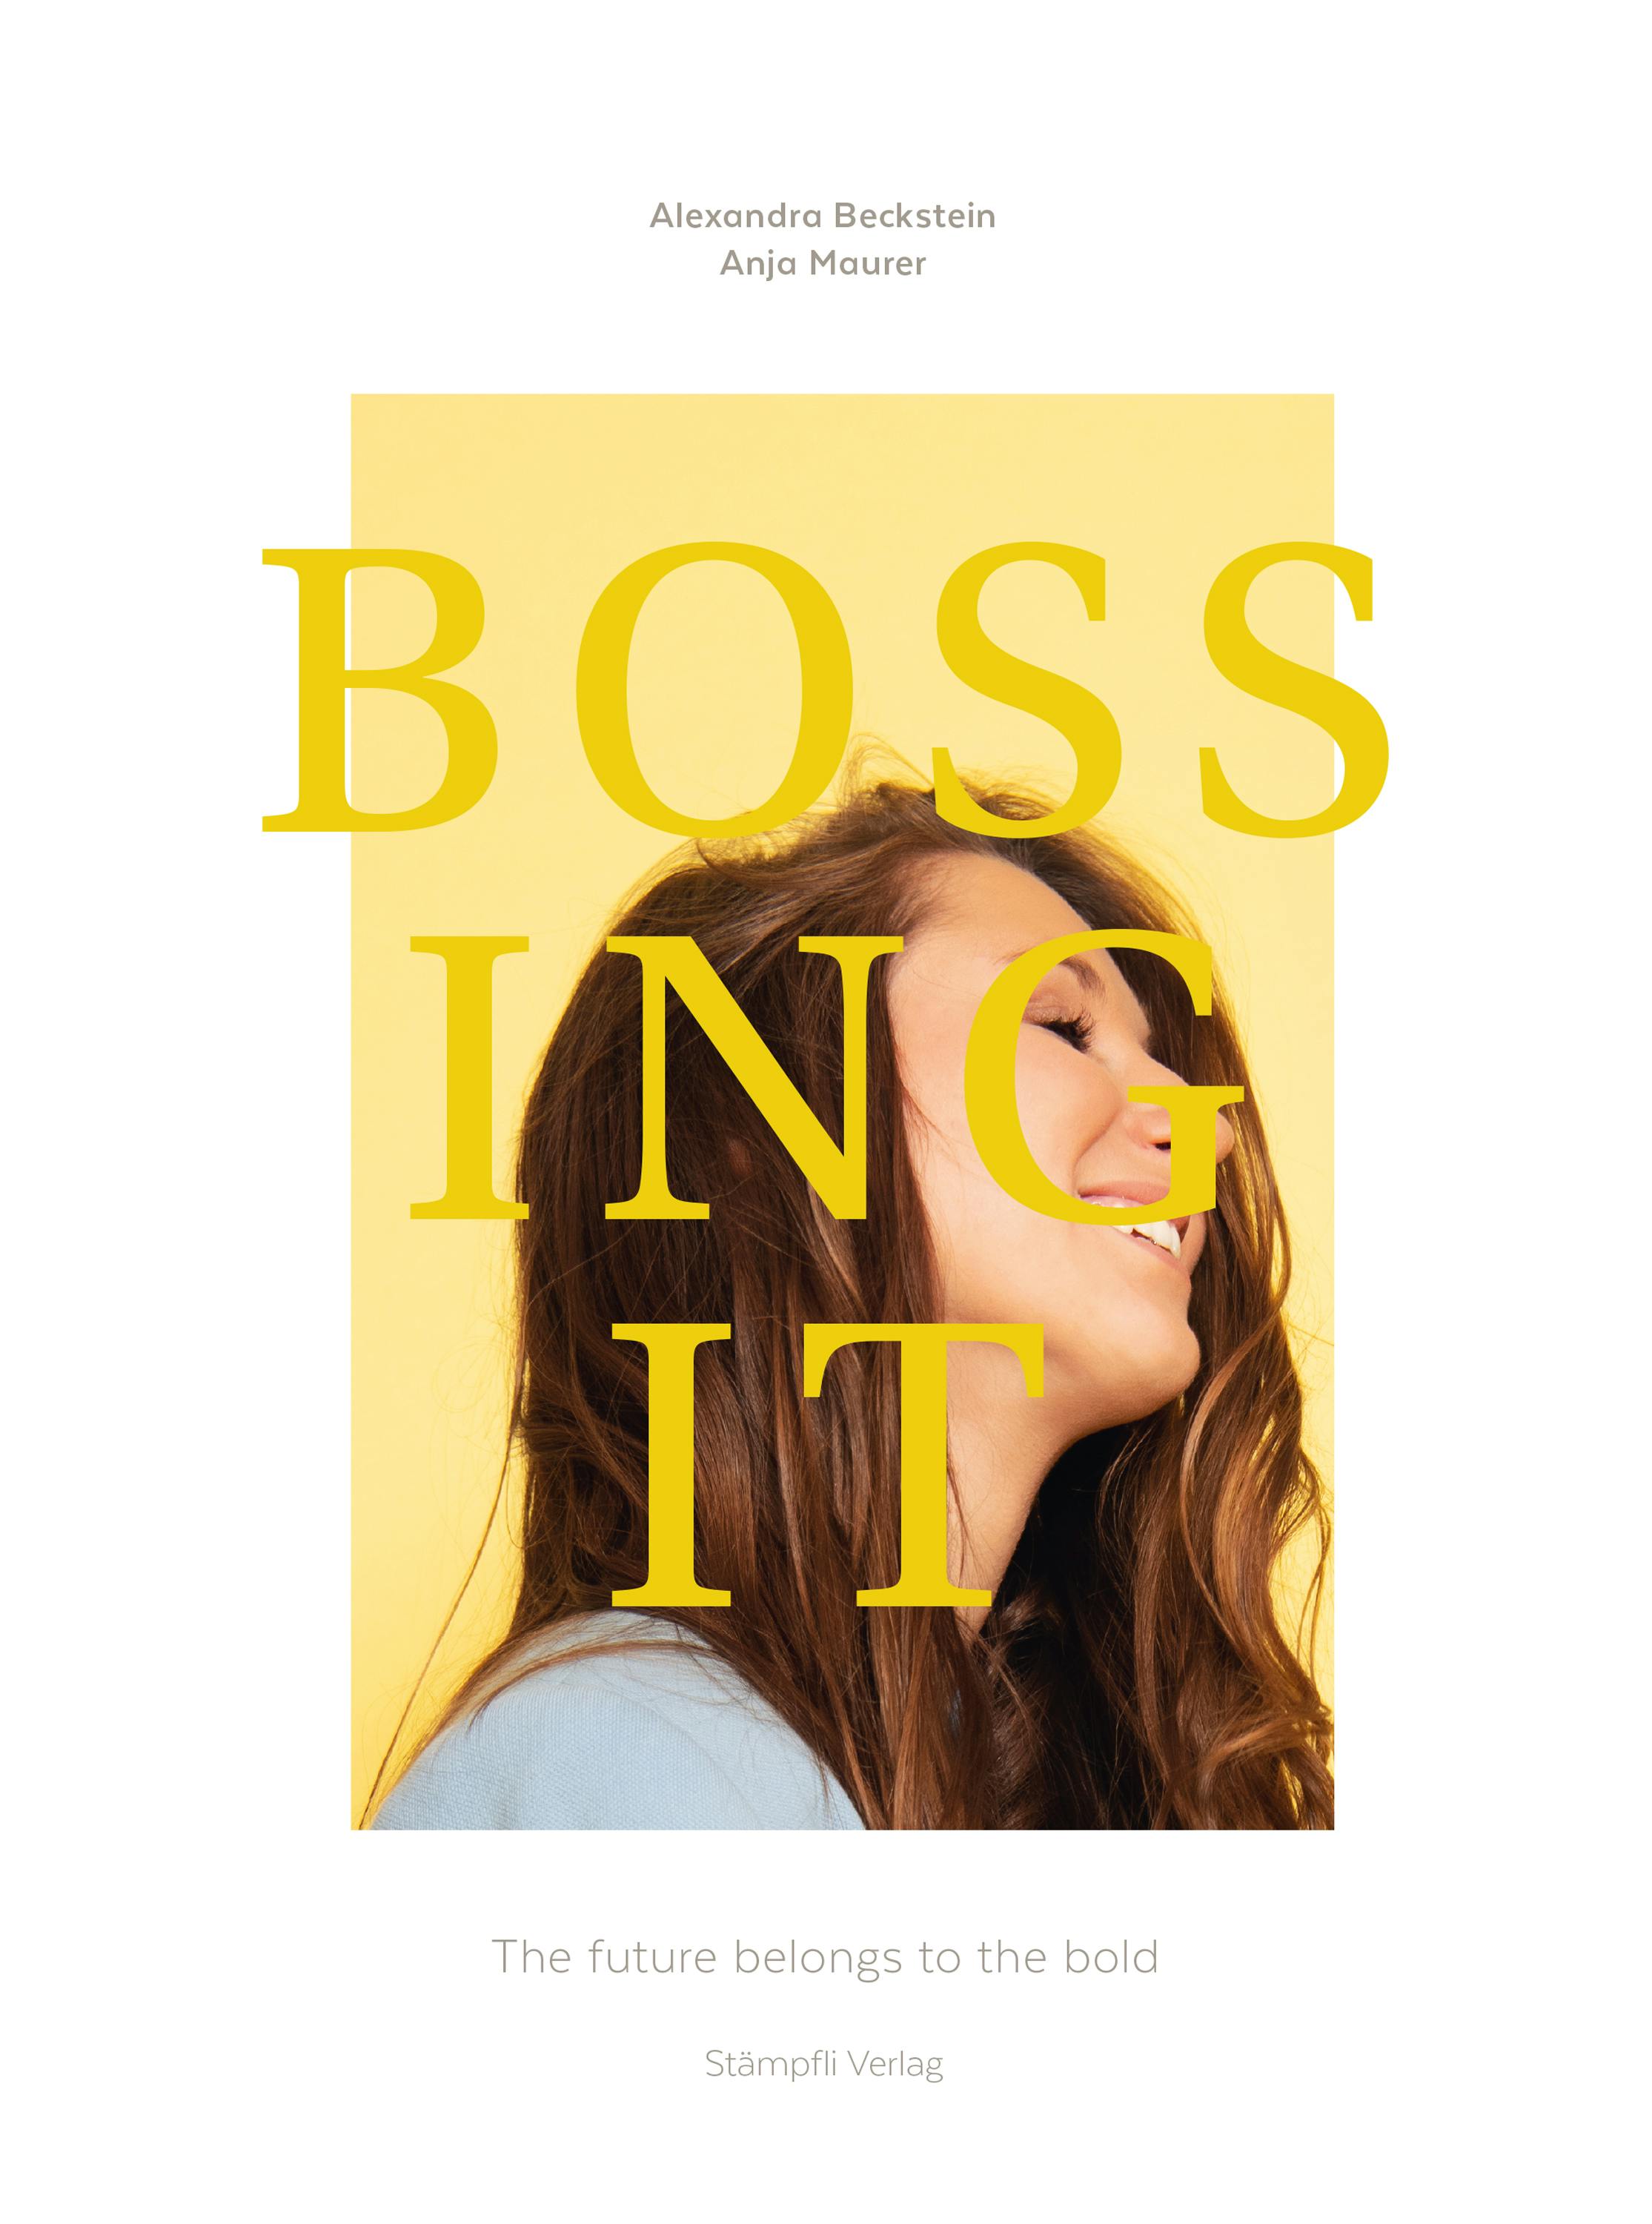 Bossing it: The future belongs to the bold - Anja Maurer, Alexandra Beckstein